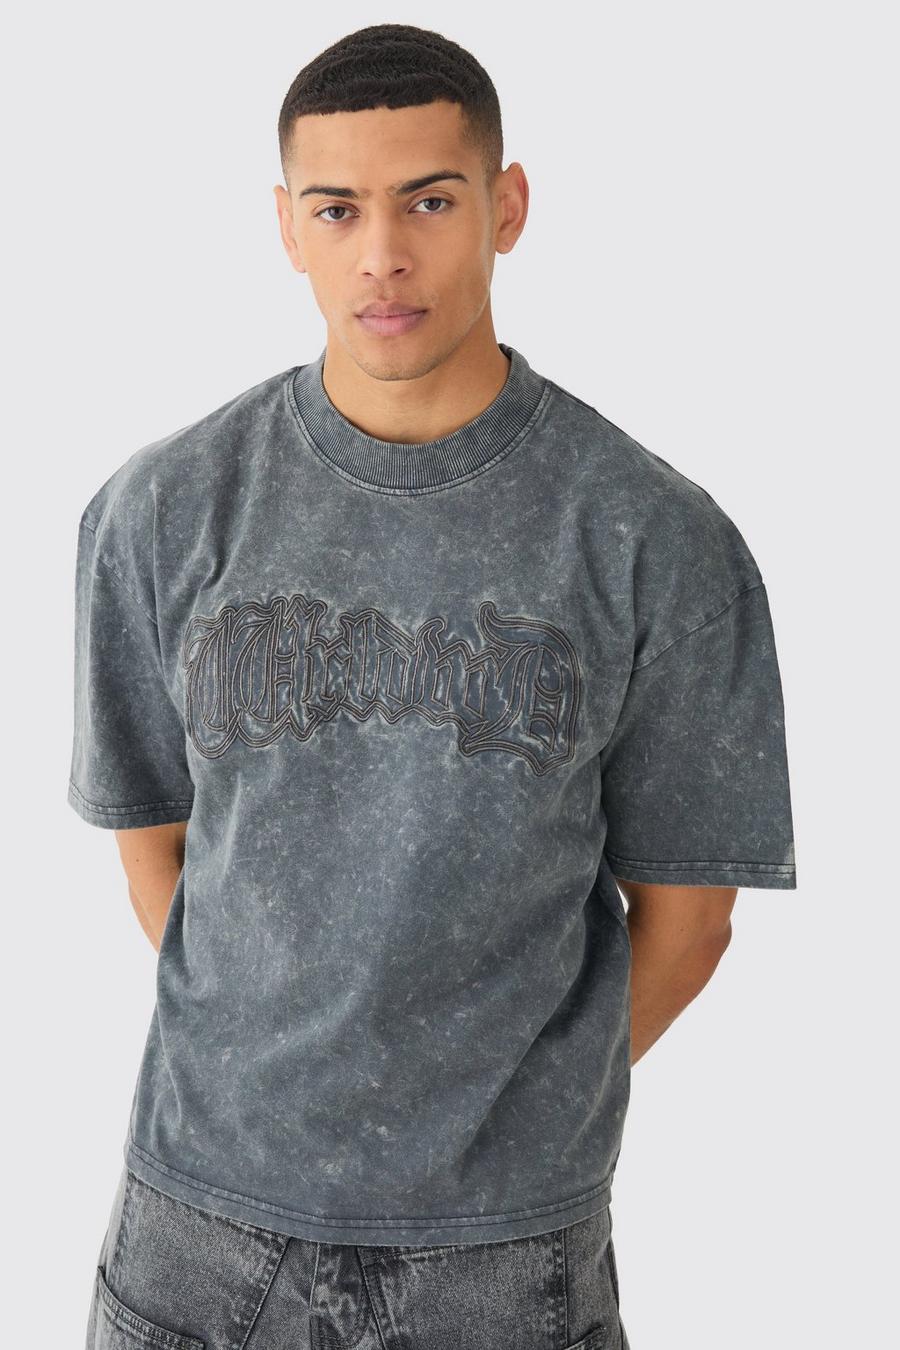 Camiseta holgada recta con lavado de ácido y bordado Worldwide, Charcoal